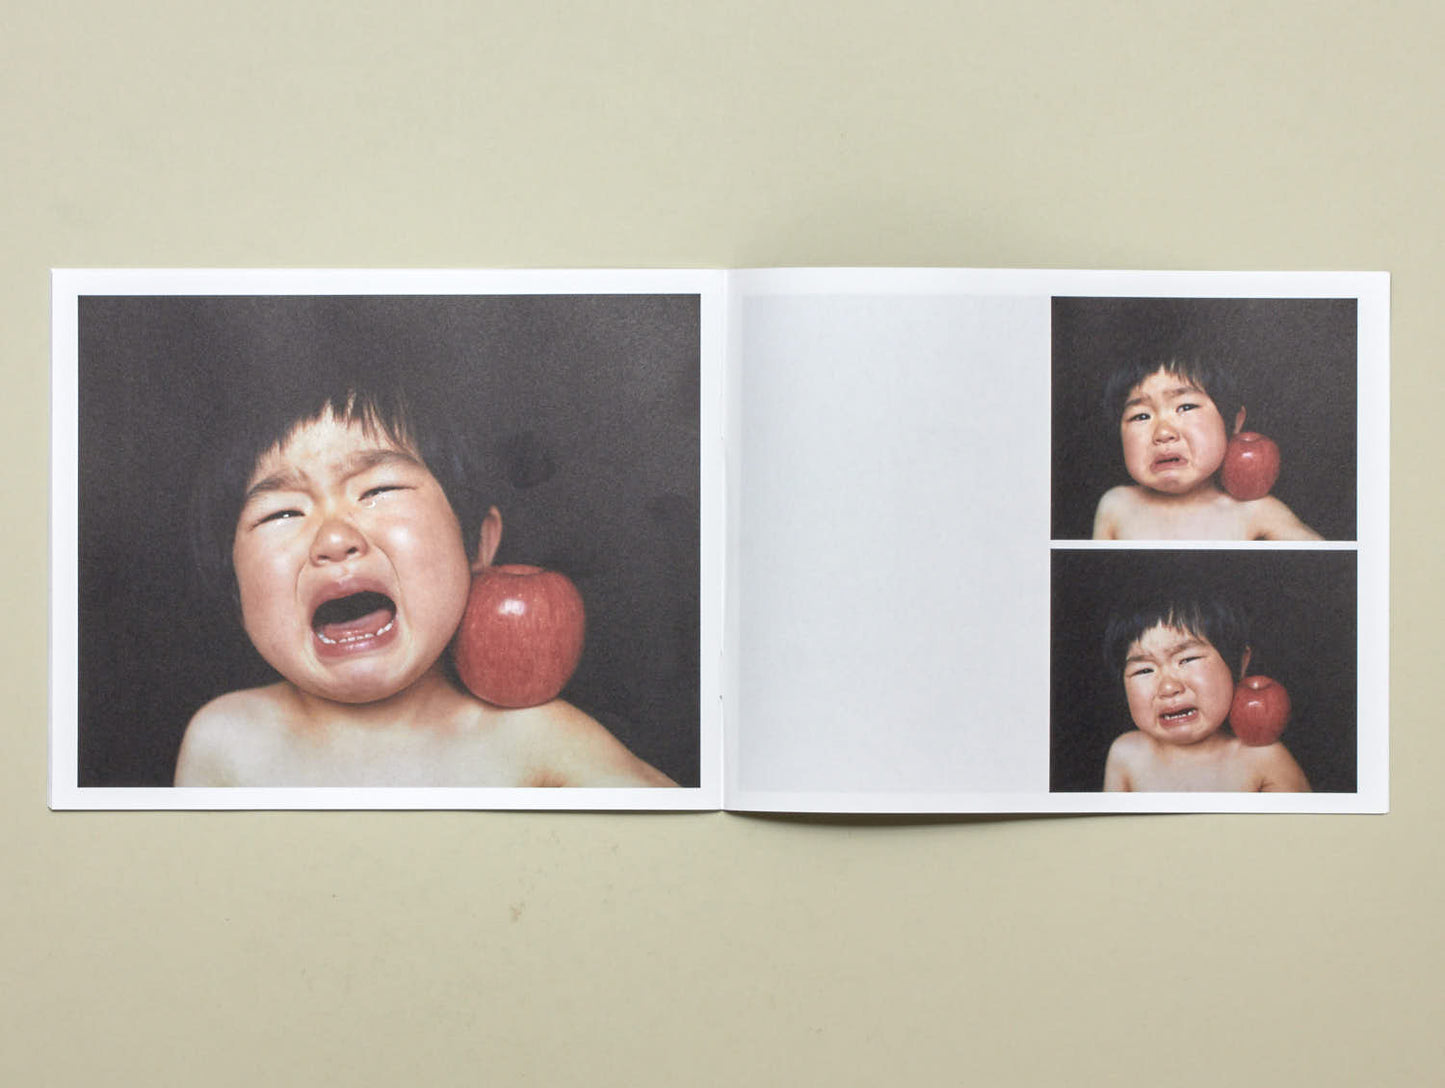 Osamu Yokonami, Wild Children